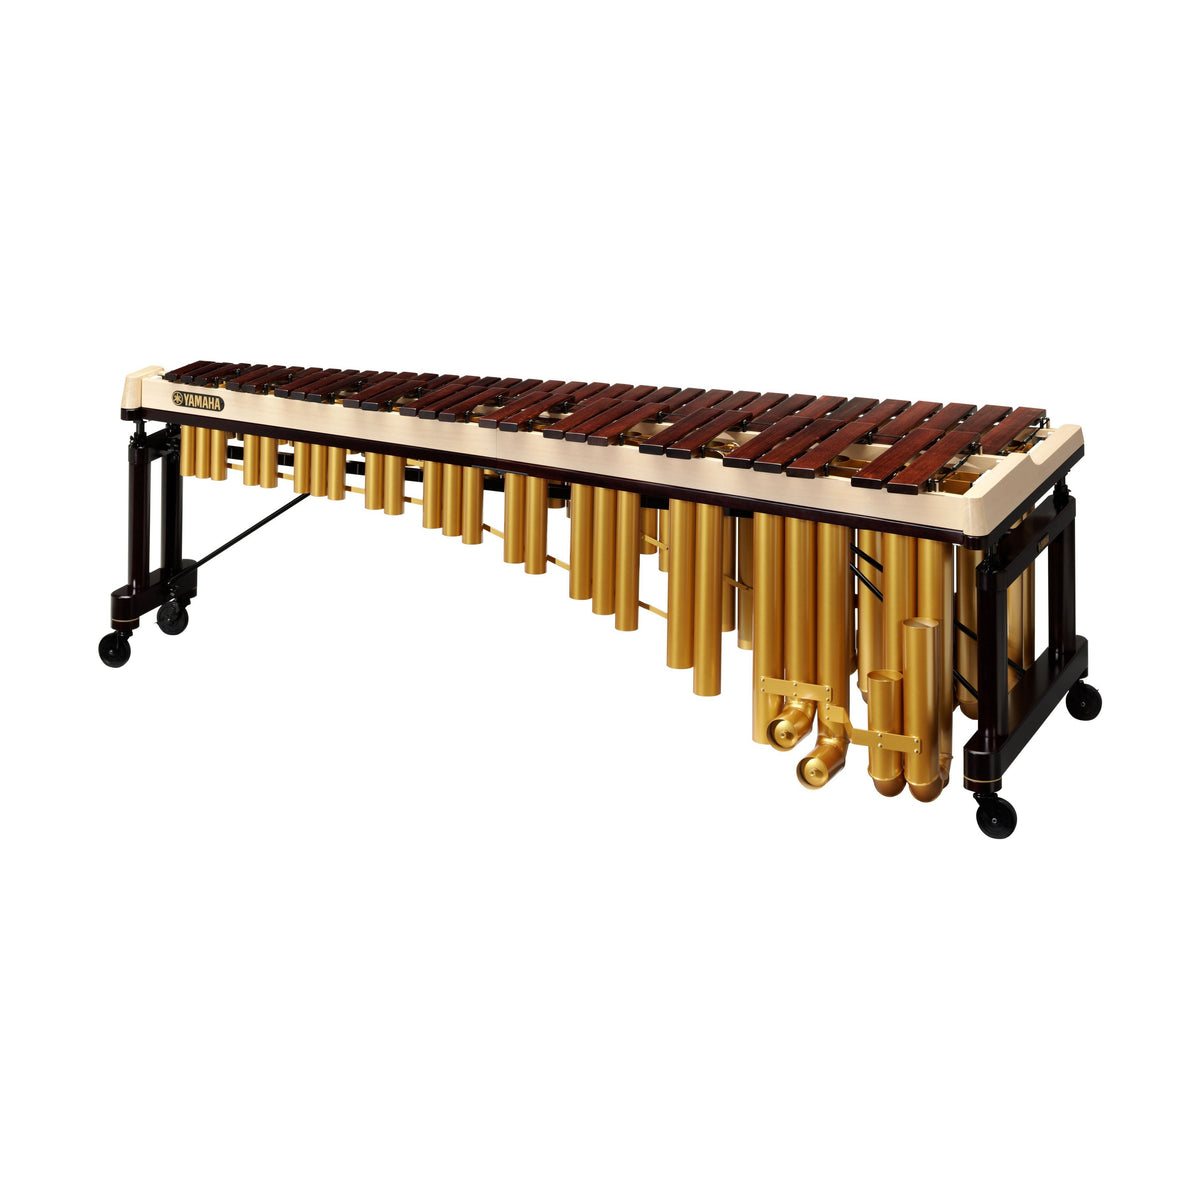 Yamaha - YM-6100 - Rosewood Concert Grand Marimba (5-Octave)-Percussion-Yamaha-Music Elements